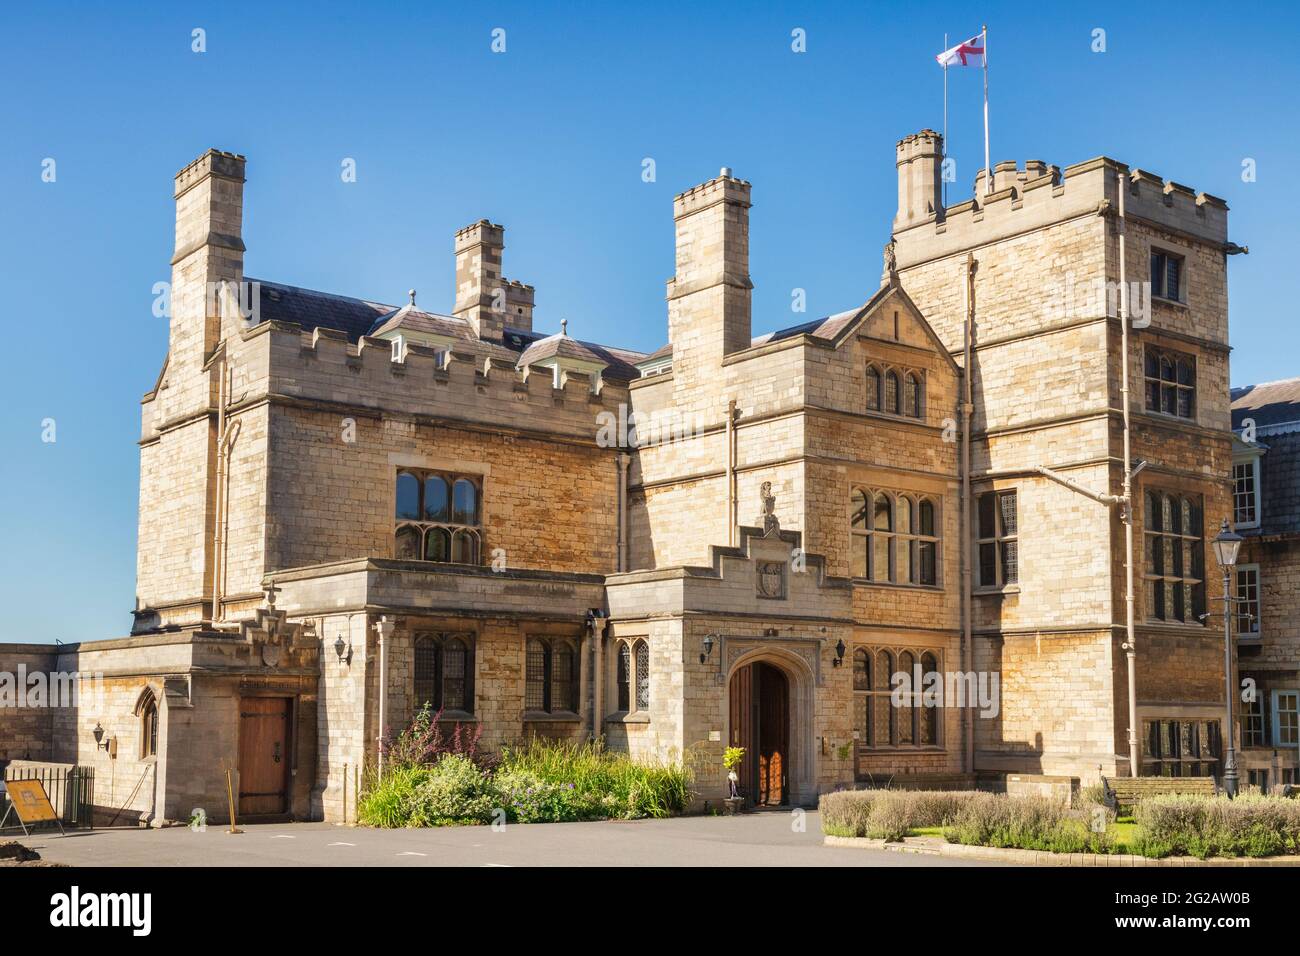 2 juillet 2019 : Lincoln, Royaume-Uni - le Palais de l'ancien évêque, ou Maison du Roi Edward, un jour d'été. C'est une reconstruction victorienne du palais médiéval, Banque D'Images